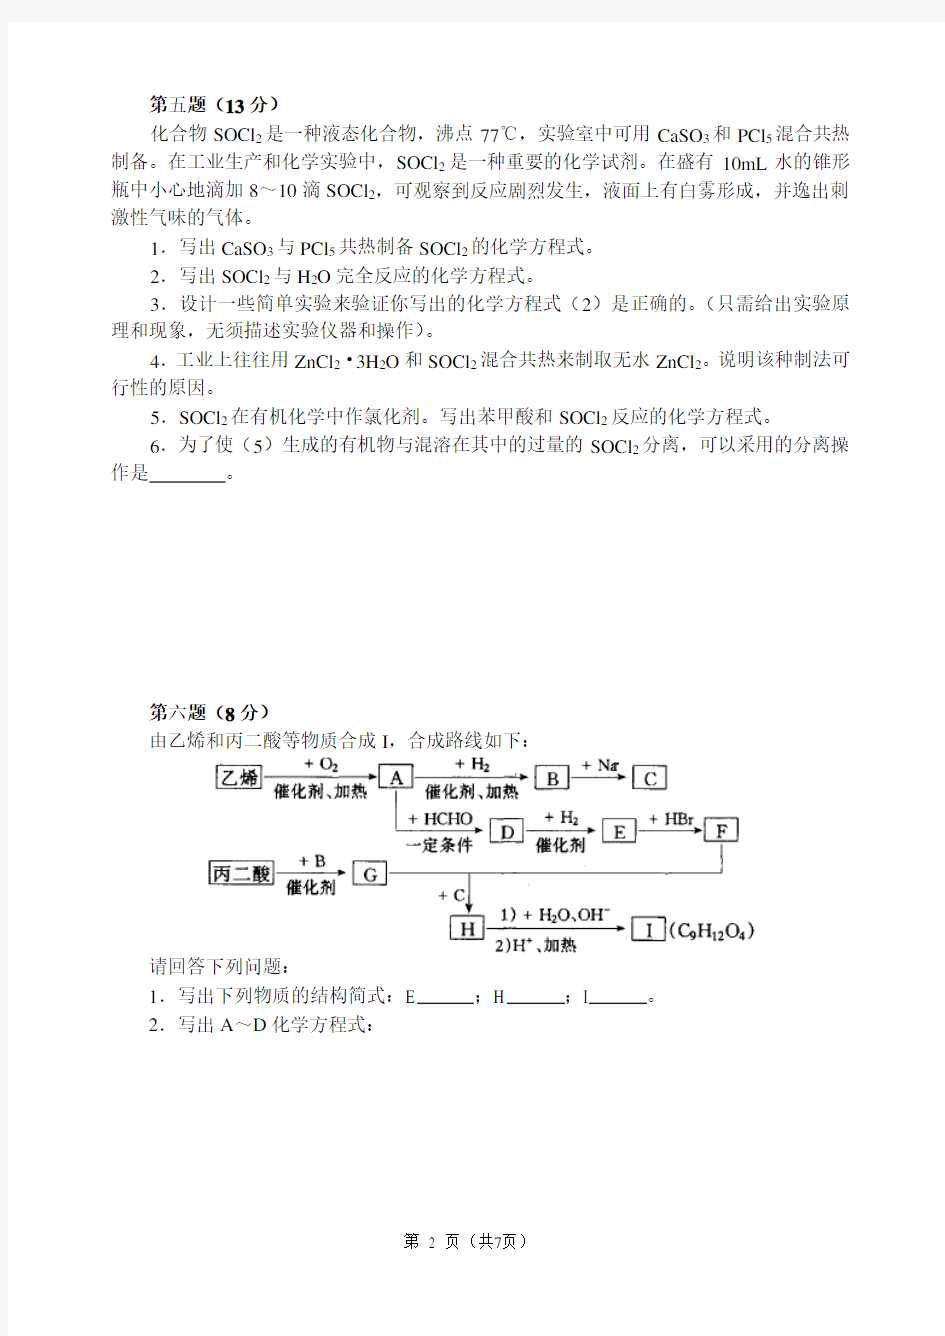 (完整word版)2013年全国高中化学竞赛预赛试卷(含答案)